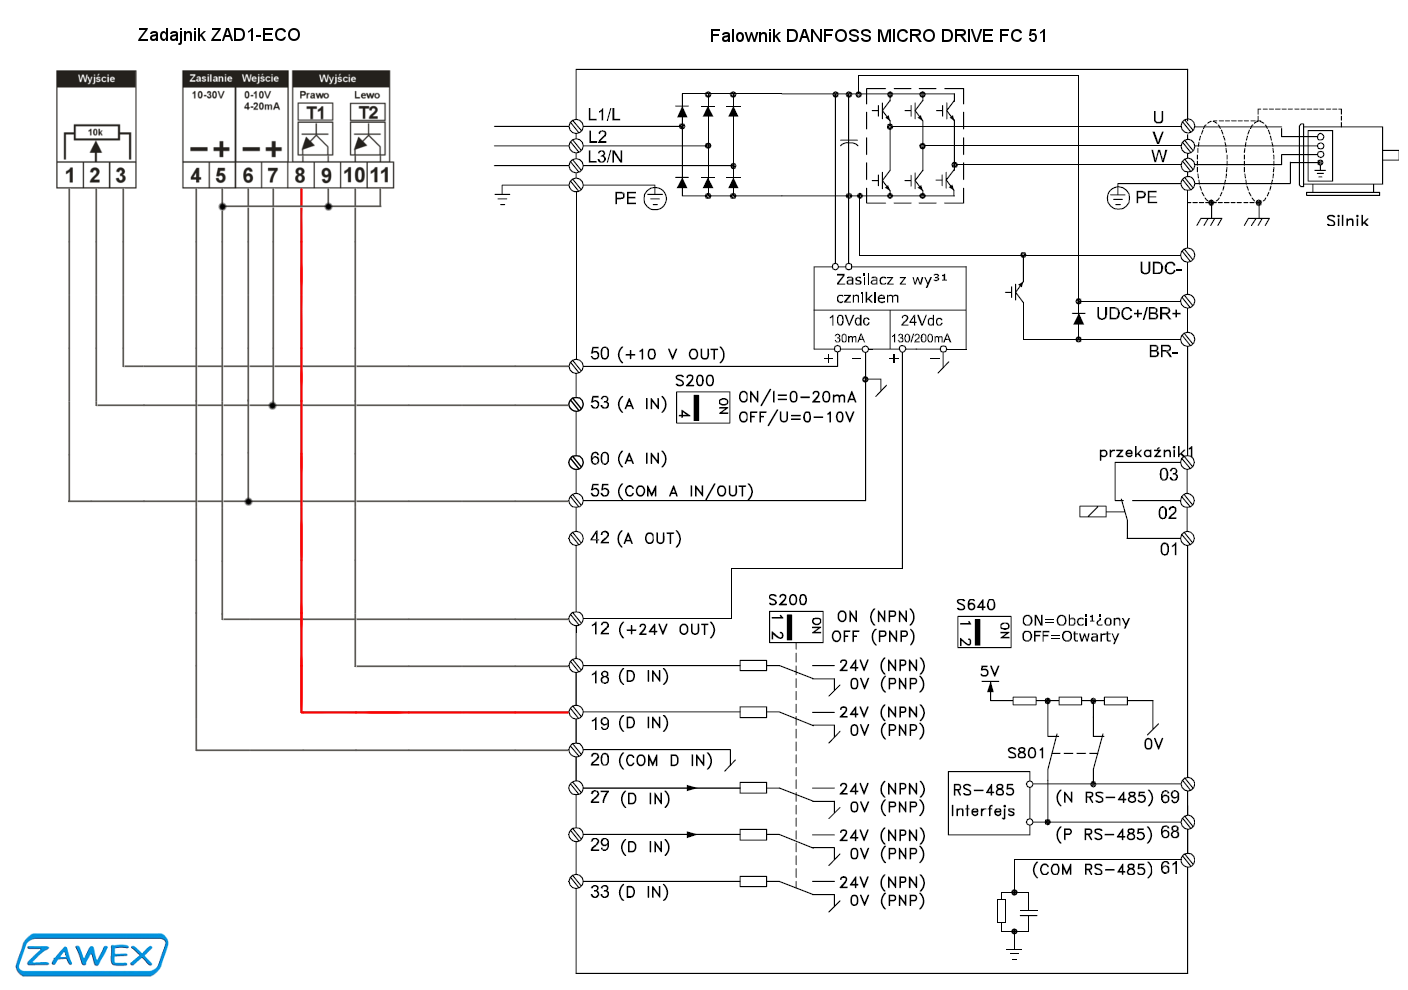 Podłączenie zadajnika ZAD1-ECO do falownika Danfoss Micro Drive FC 51 - schemat